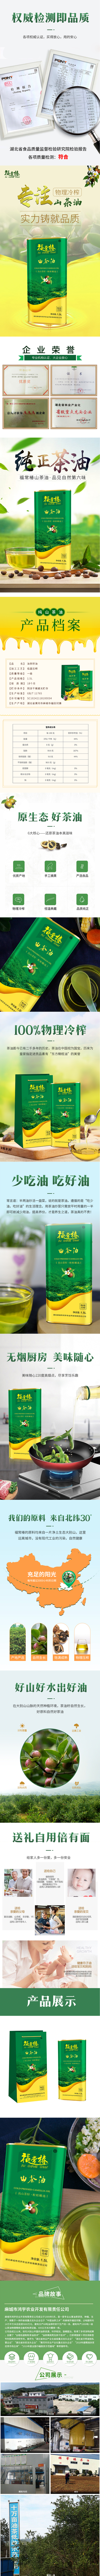 福常椿山茶油